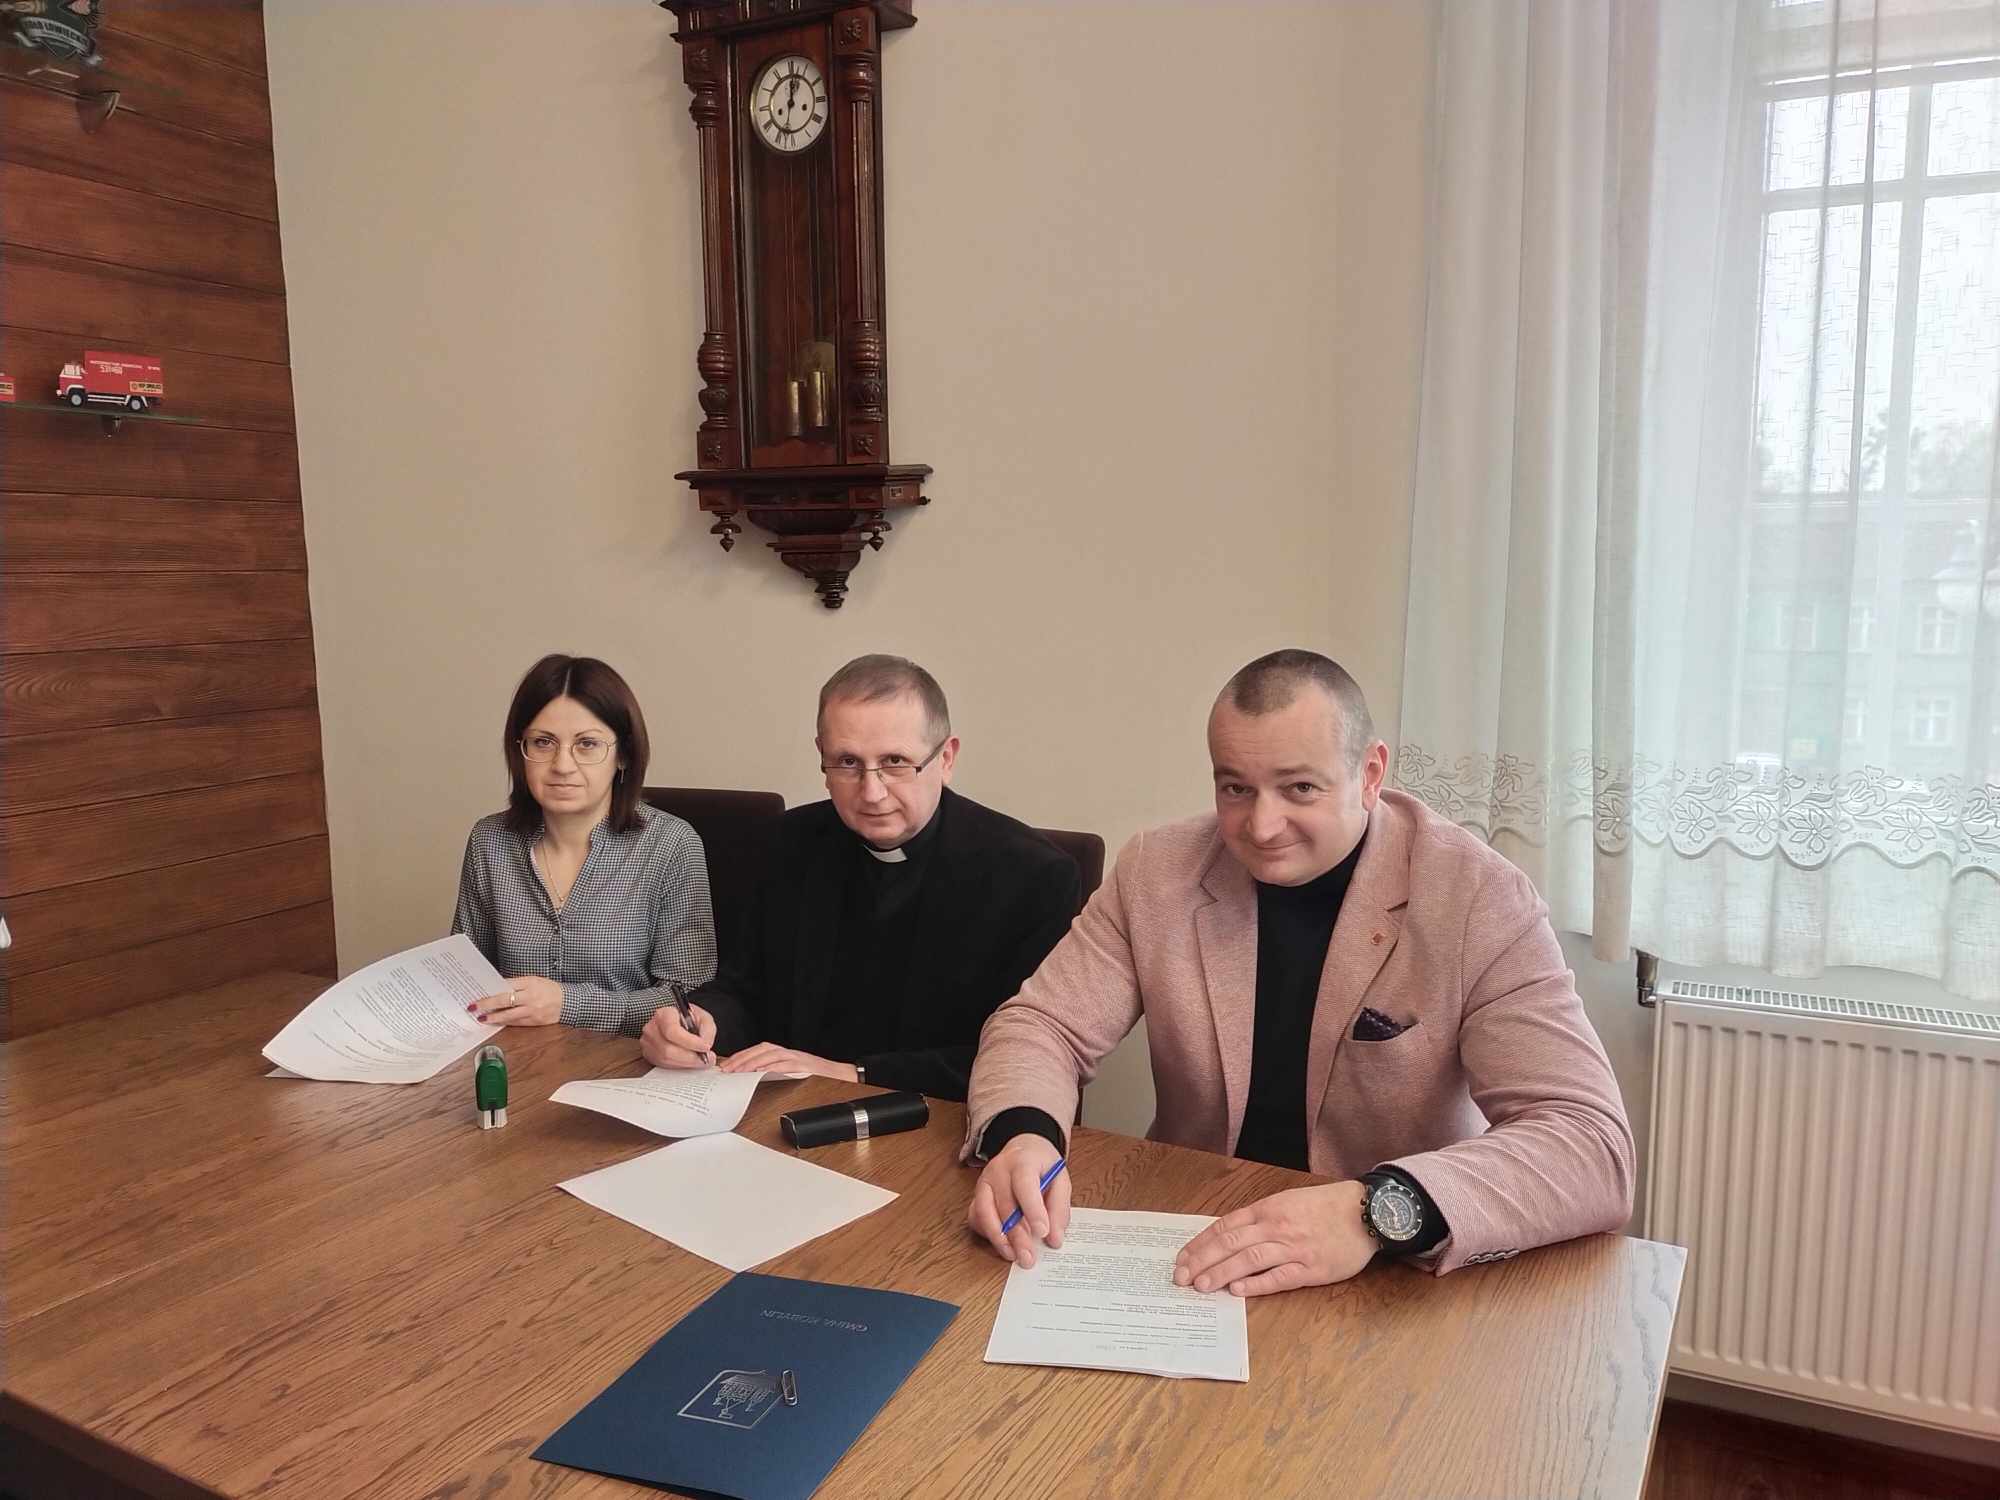 Podpisanie umowy dotacyjnej z ks. Januszem Gierą